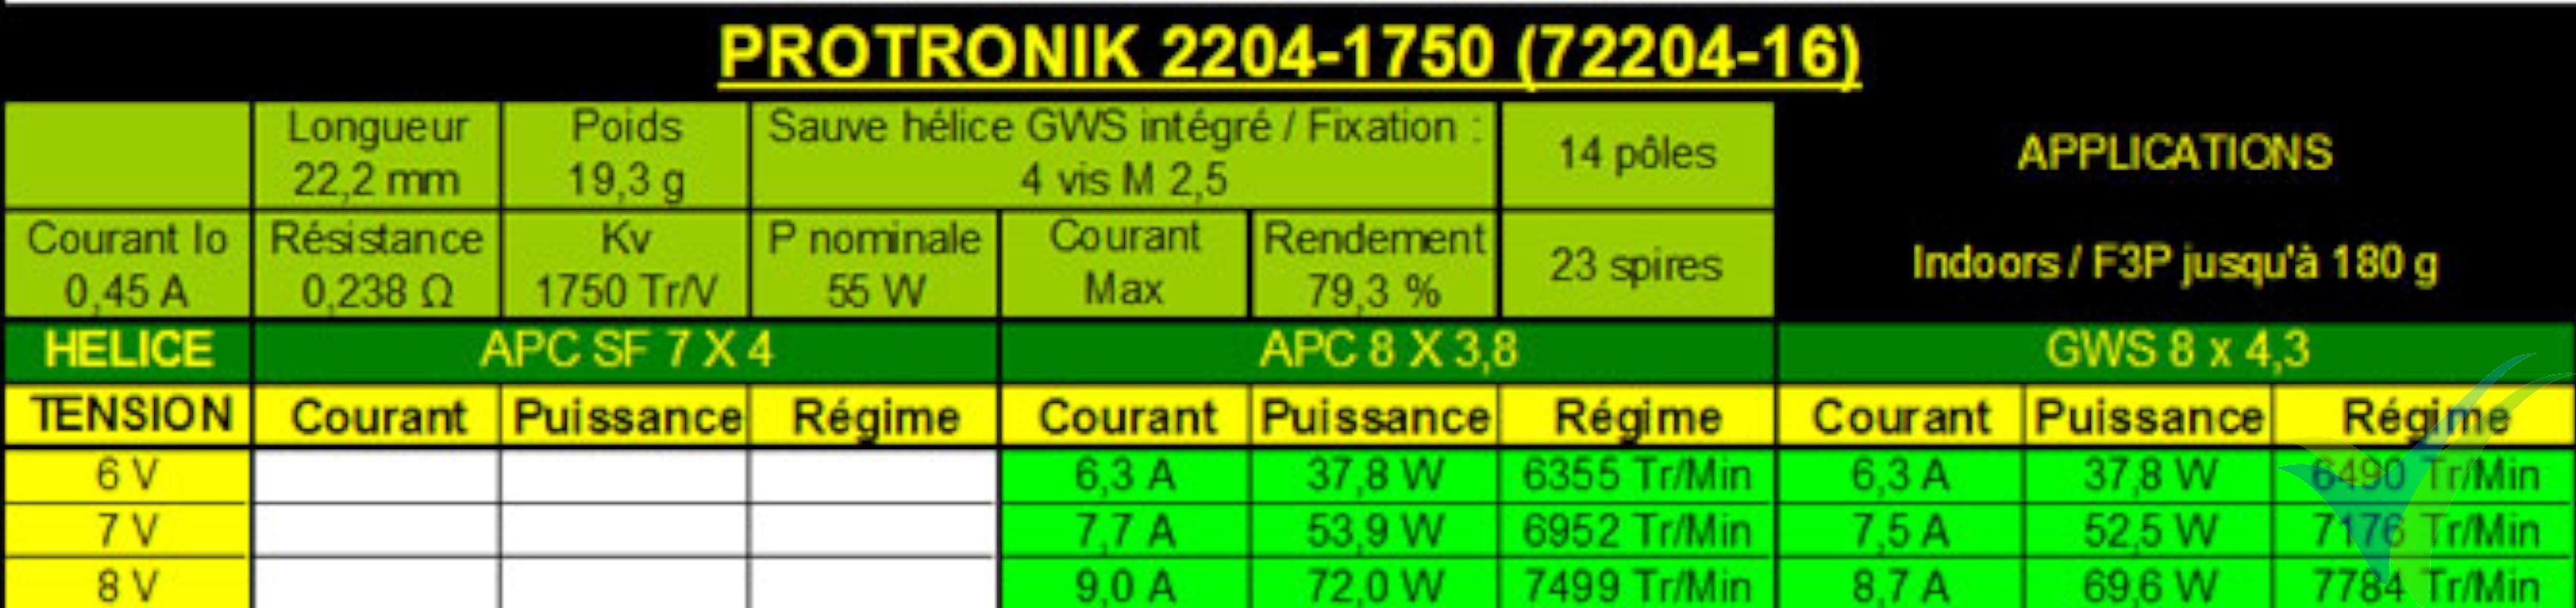 Tabla de datos técnicos del motor Pro-Tronik / Motrolfly DM 2204-1750